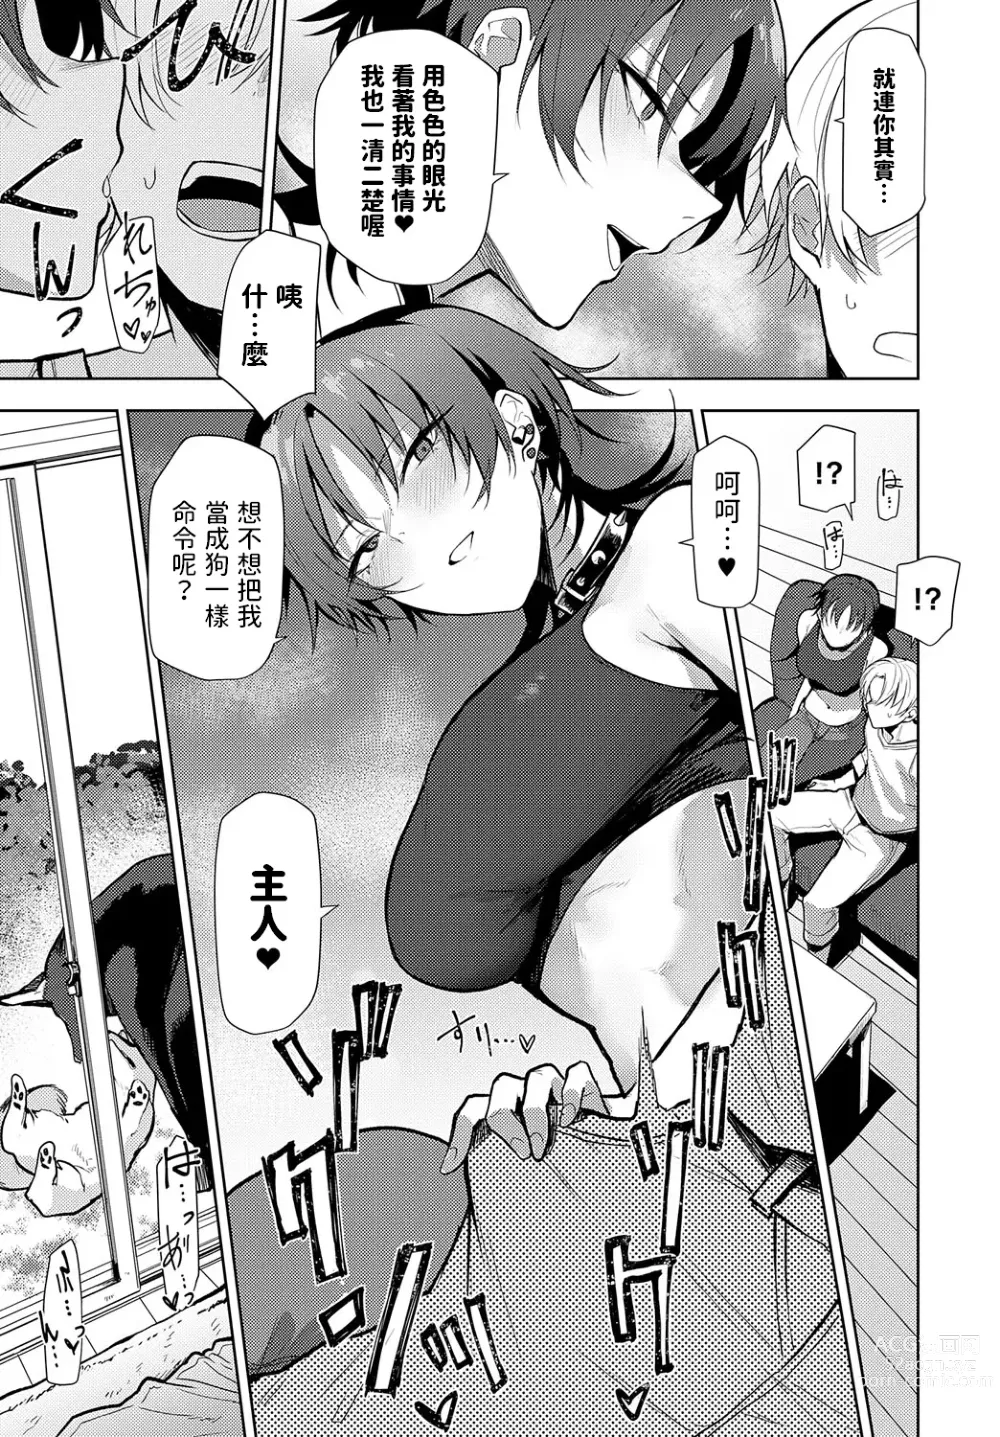 Page 7 of manga Nonverbal communication